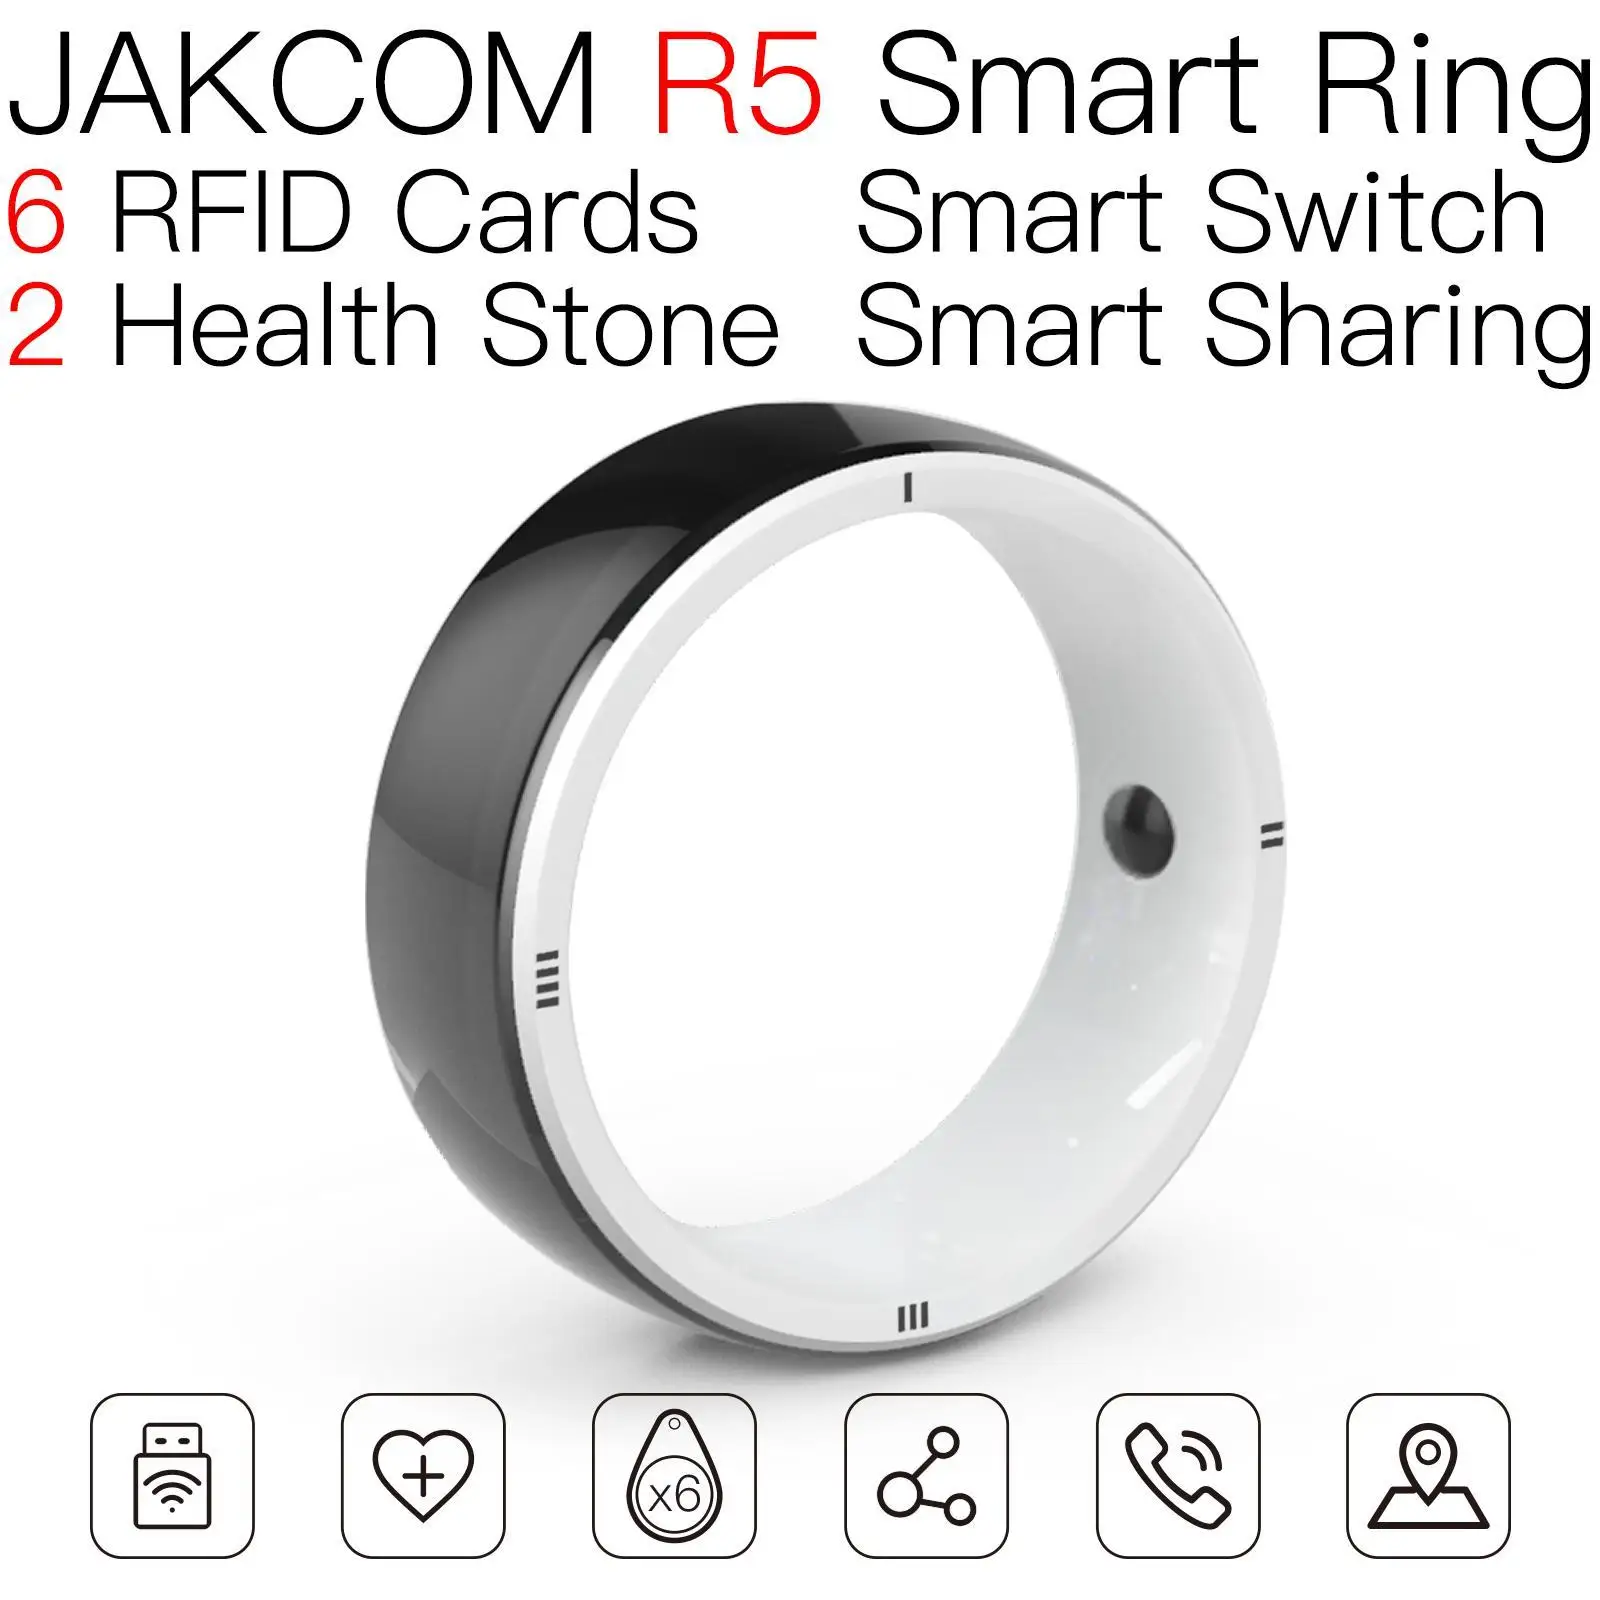 JAKCOM R5 Smart Ring Новое поступление в качестве производителя одежды jordan4 rfid-бирка с чипом vacas scaner micro auto reset для ip4300 nfc